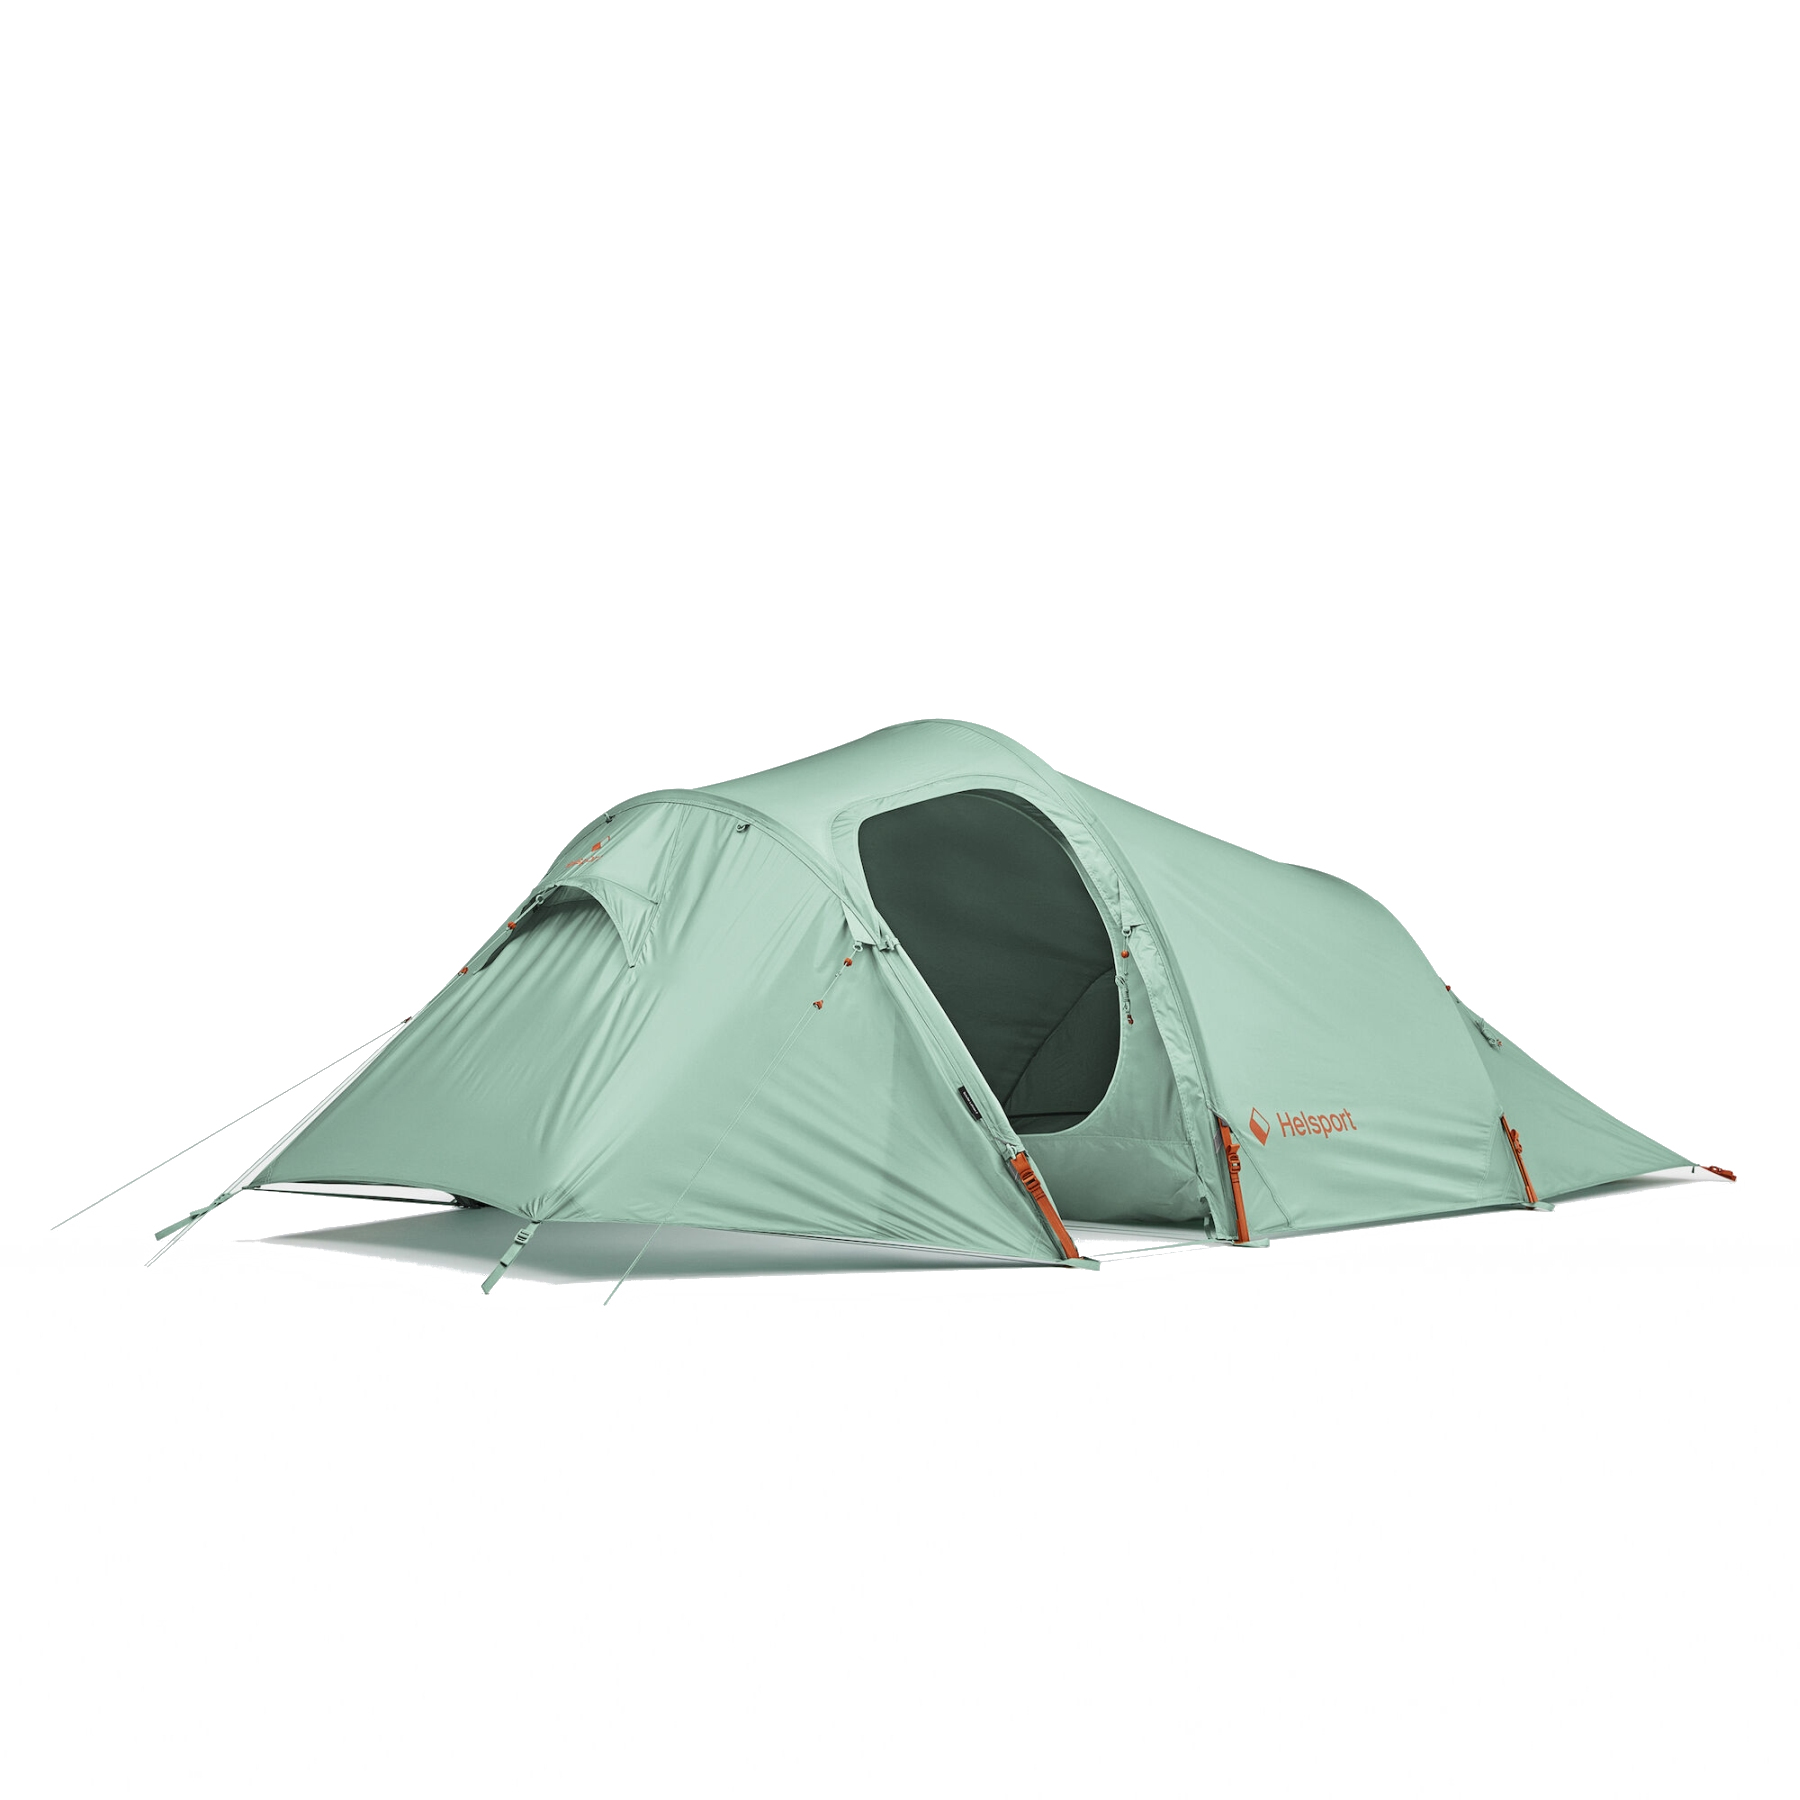 Productfoto van Helsport Scouter Lofoten 2 Tent - granite green/cloudberry